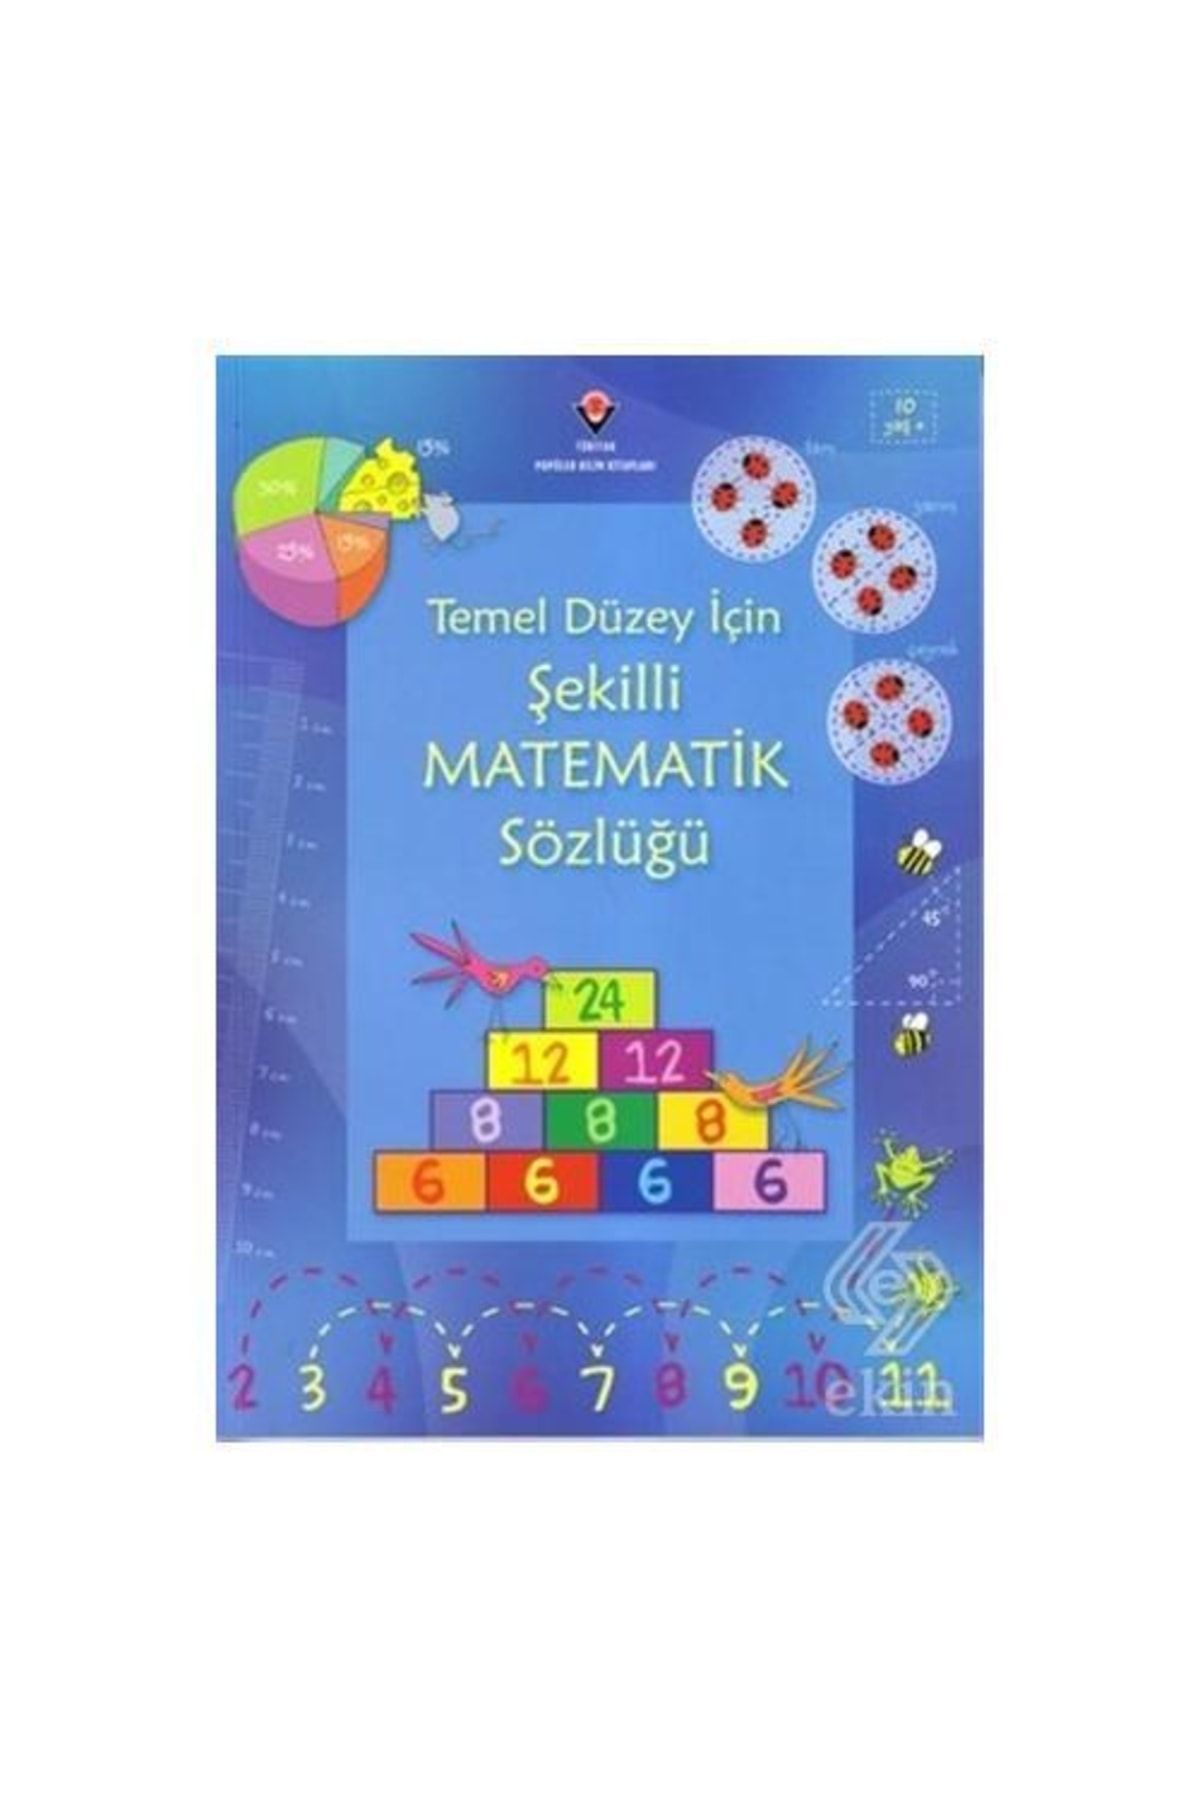 Tübitak Yayınları Temel Düzey Için Şekilli Matematik Sözlüğü /